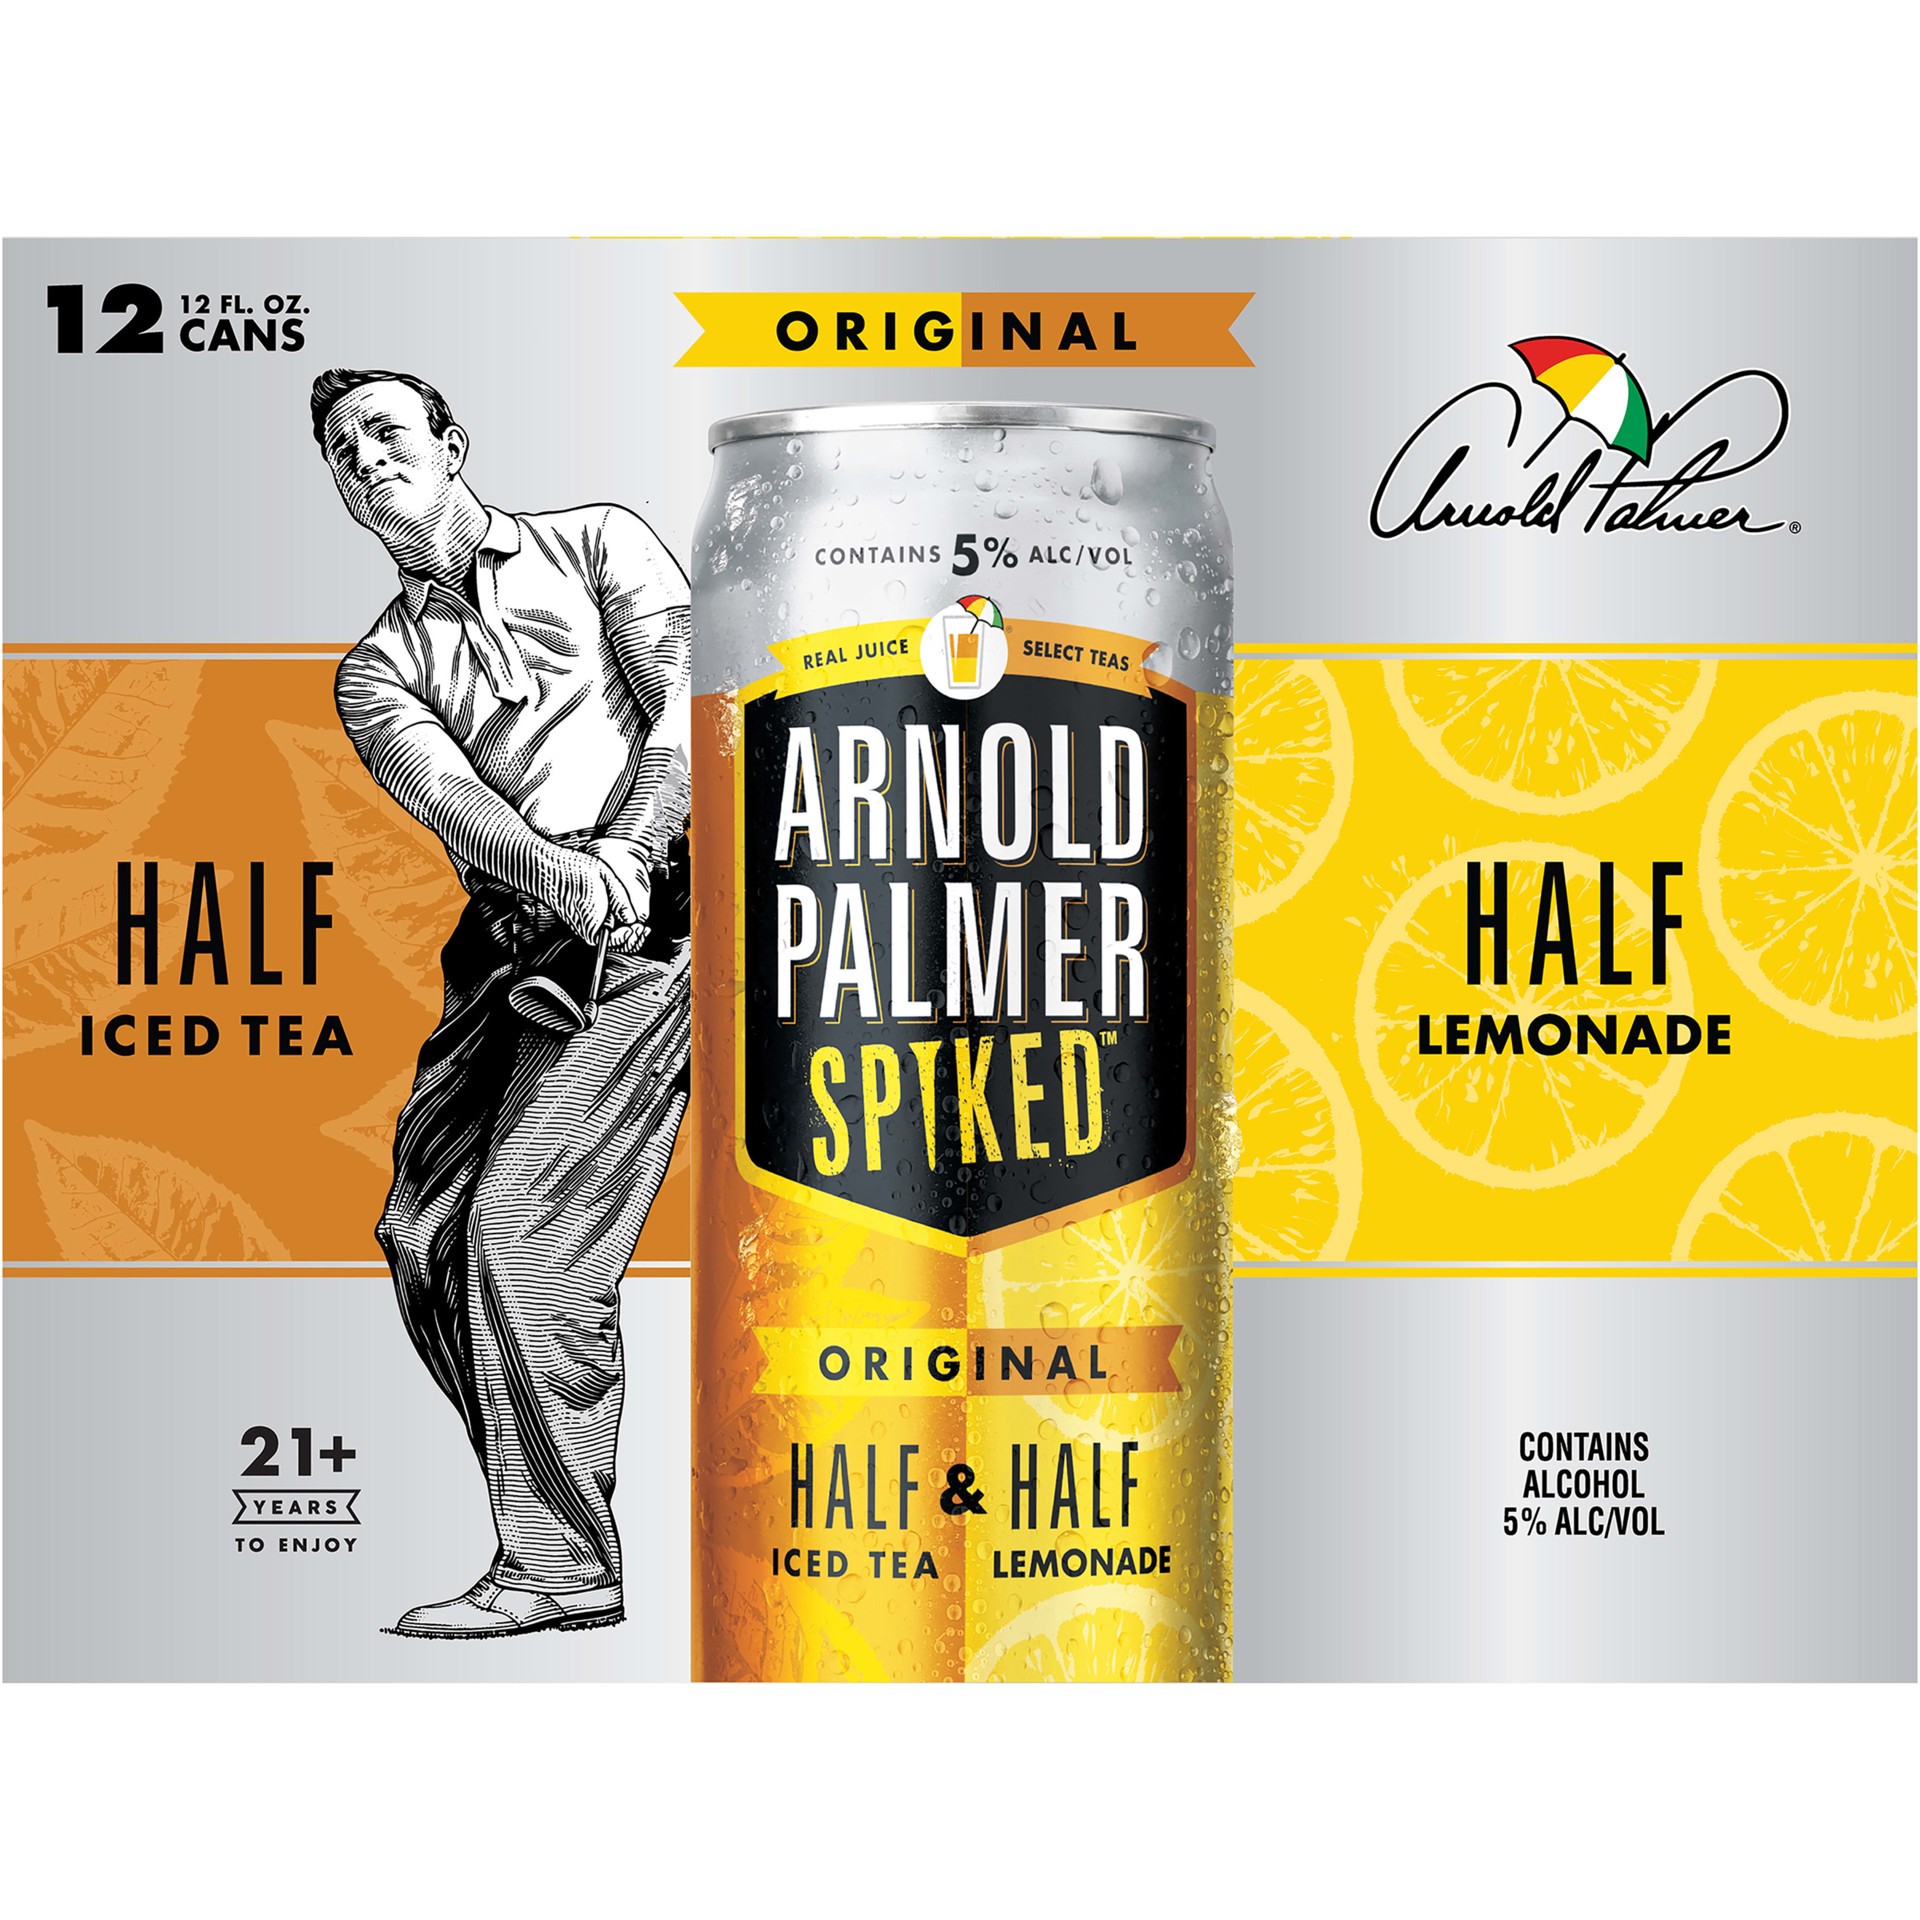 slide 5 of 5, Arnold Palmer Spiked Half & Half Original Arnold Palmer Spiked Original Half & Half Iced Tea Lemonade, 12 Pack, 12 fl oz Cans, 5% ABV, 12 fl oz